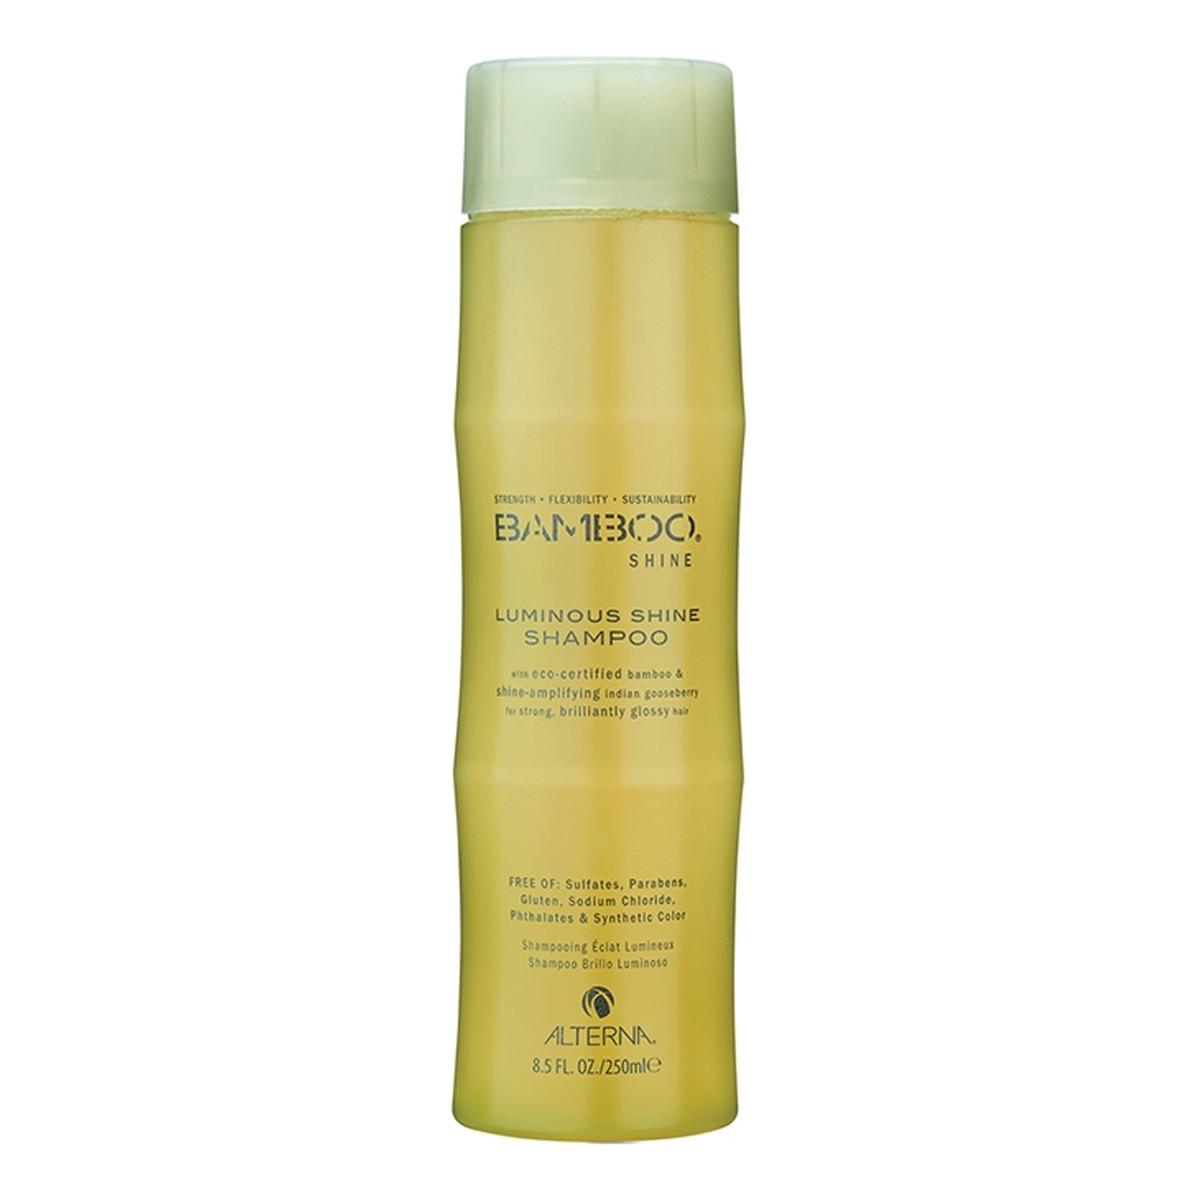 Alterna Bamboo Shine szampon zapewniający błyszczący połysk 250ml